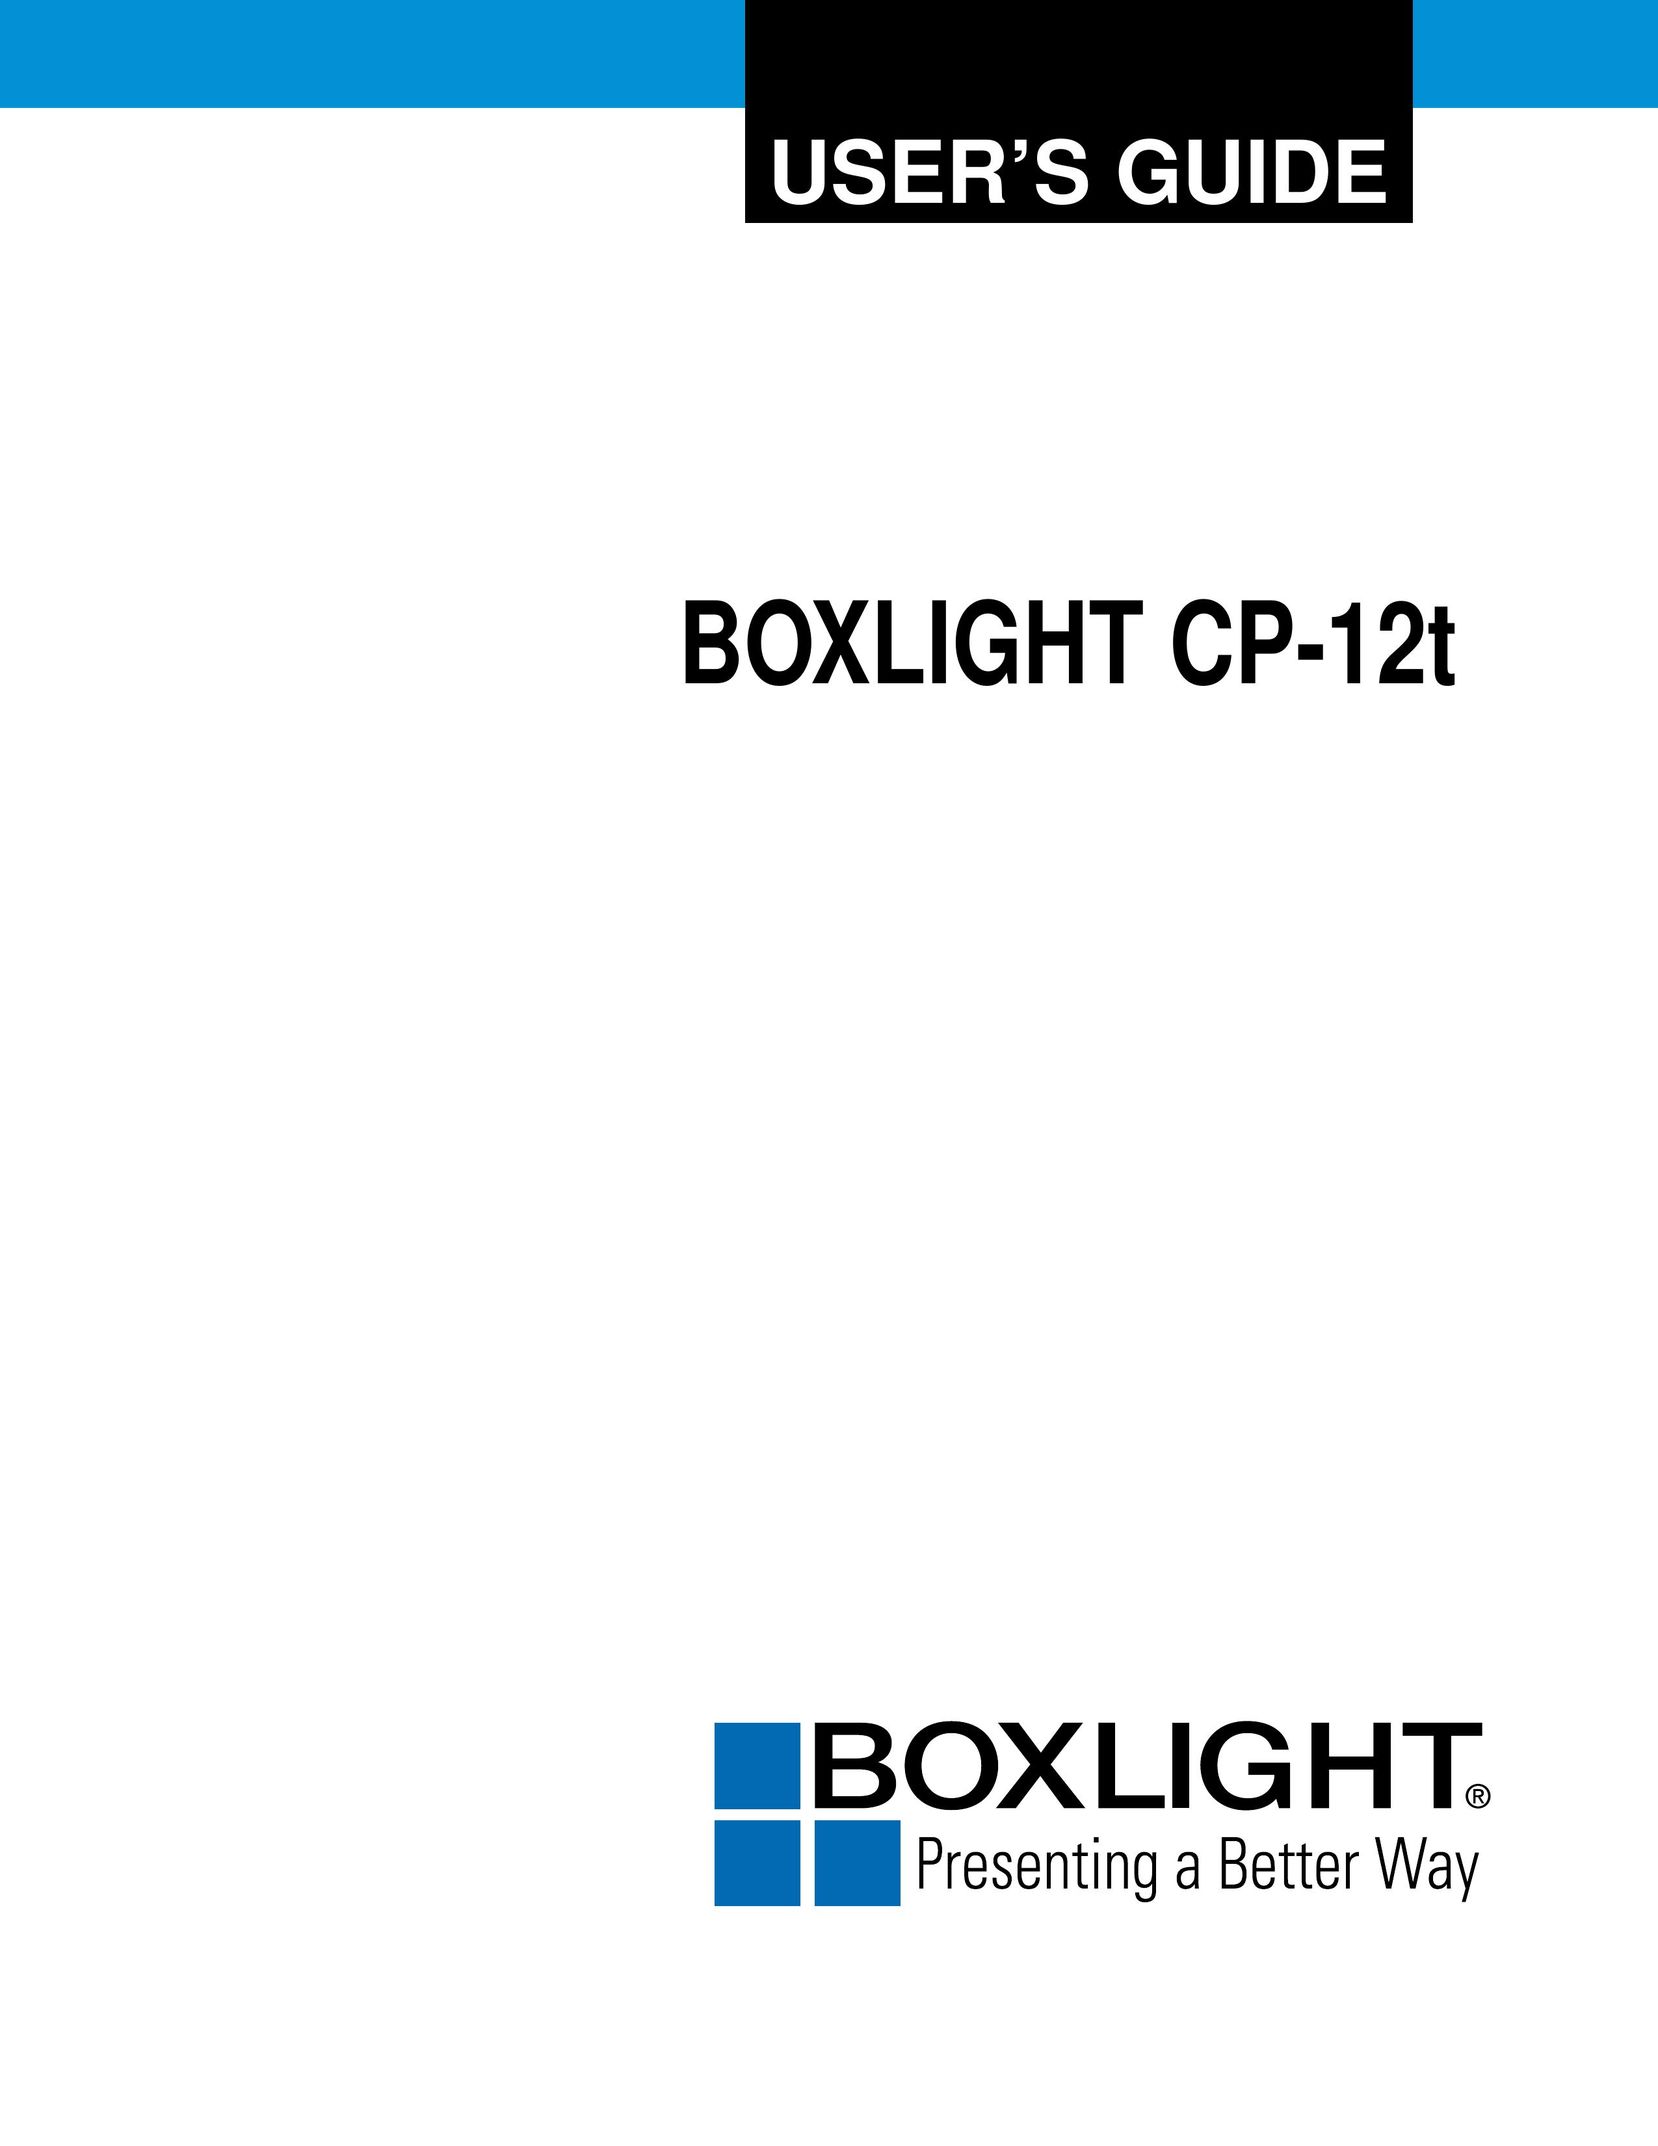 BOXLIGHT cp-12t Projector User Manual